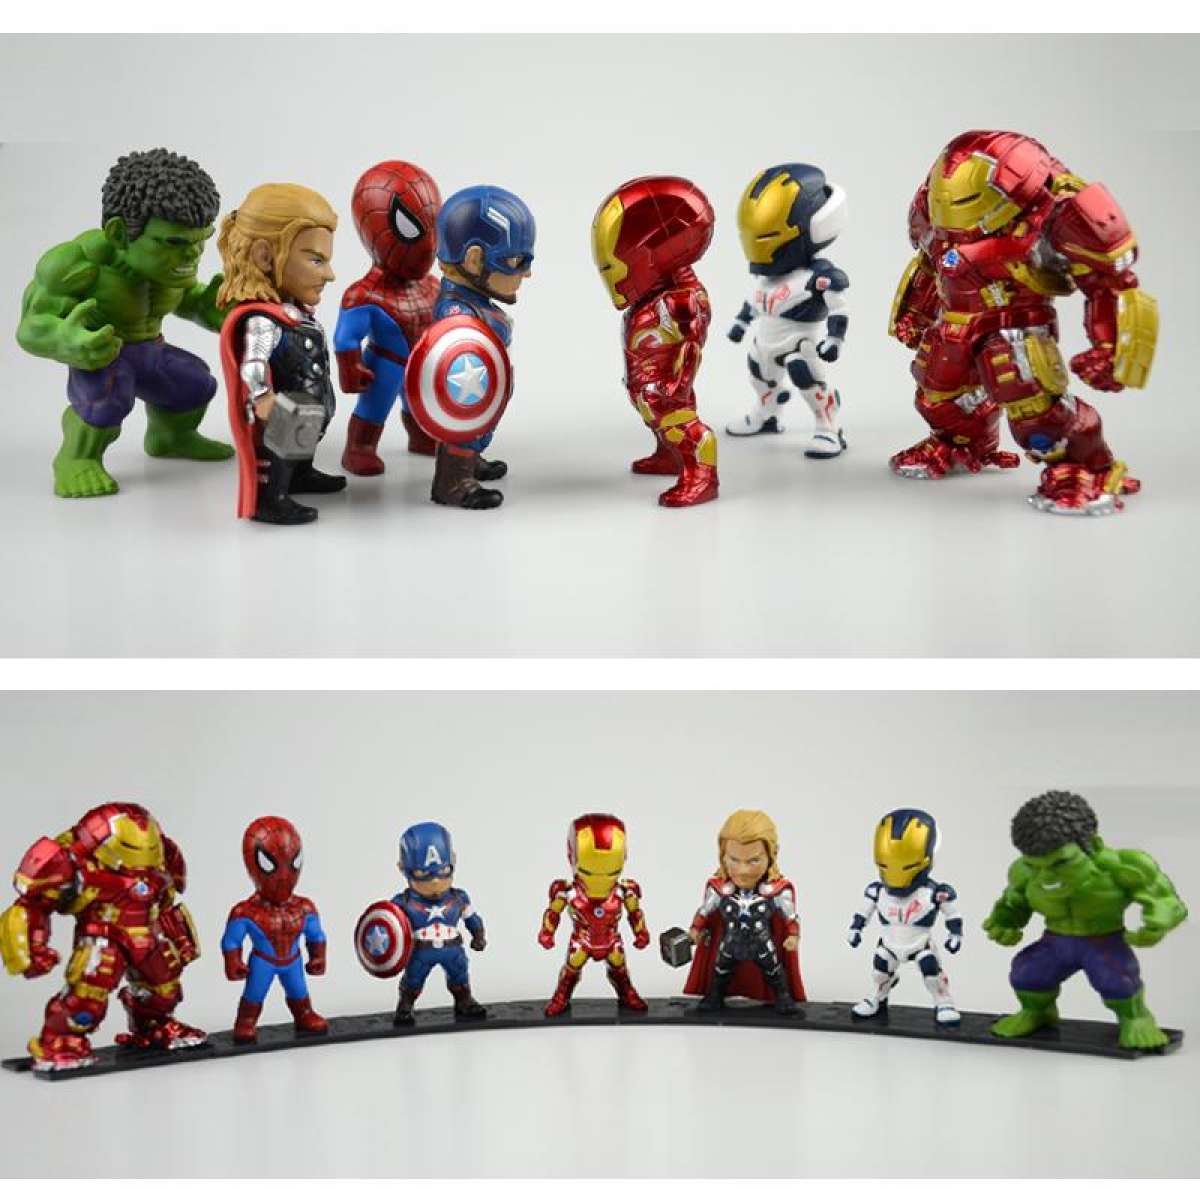 Bộ Đồ Chơi Biệt Đội Siêu Anh Hùng AVENGERS [6 thanh niên] - Mô hình Biệt đội siêu anh hùng The Avengers - Mô hình siêu anh hùng Marvel Avengers 6 Nhân Vật - Iron man, Thor, Captain America, Hulk, Người nhện, Shiper man